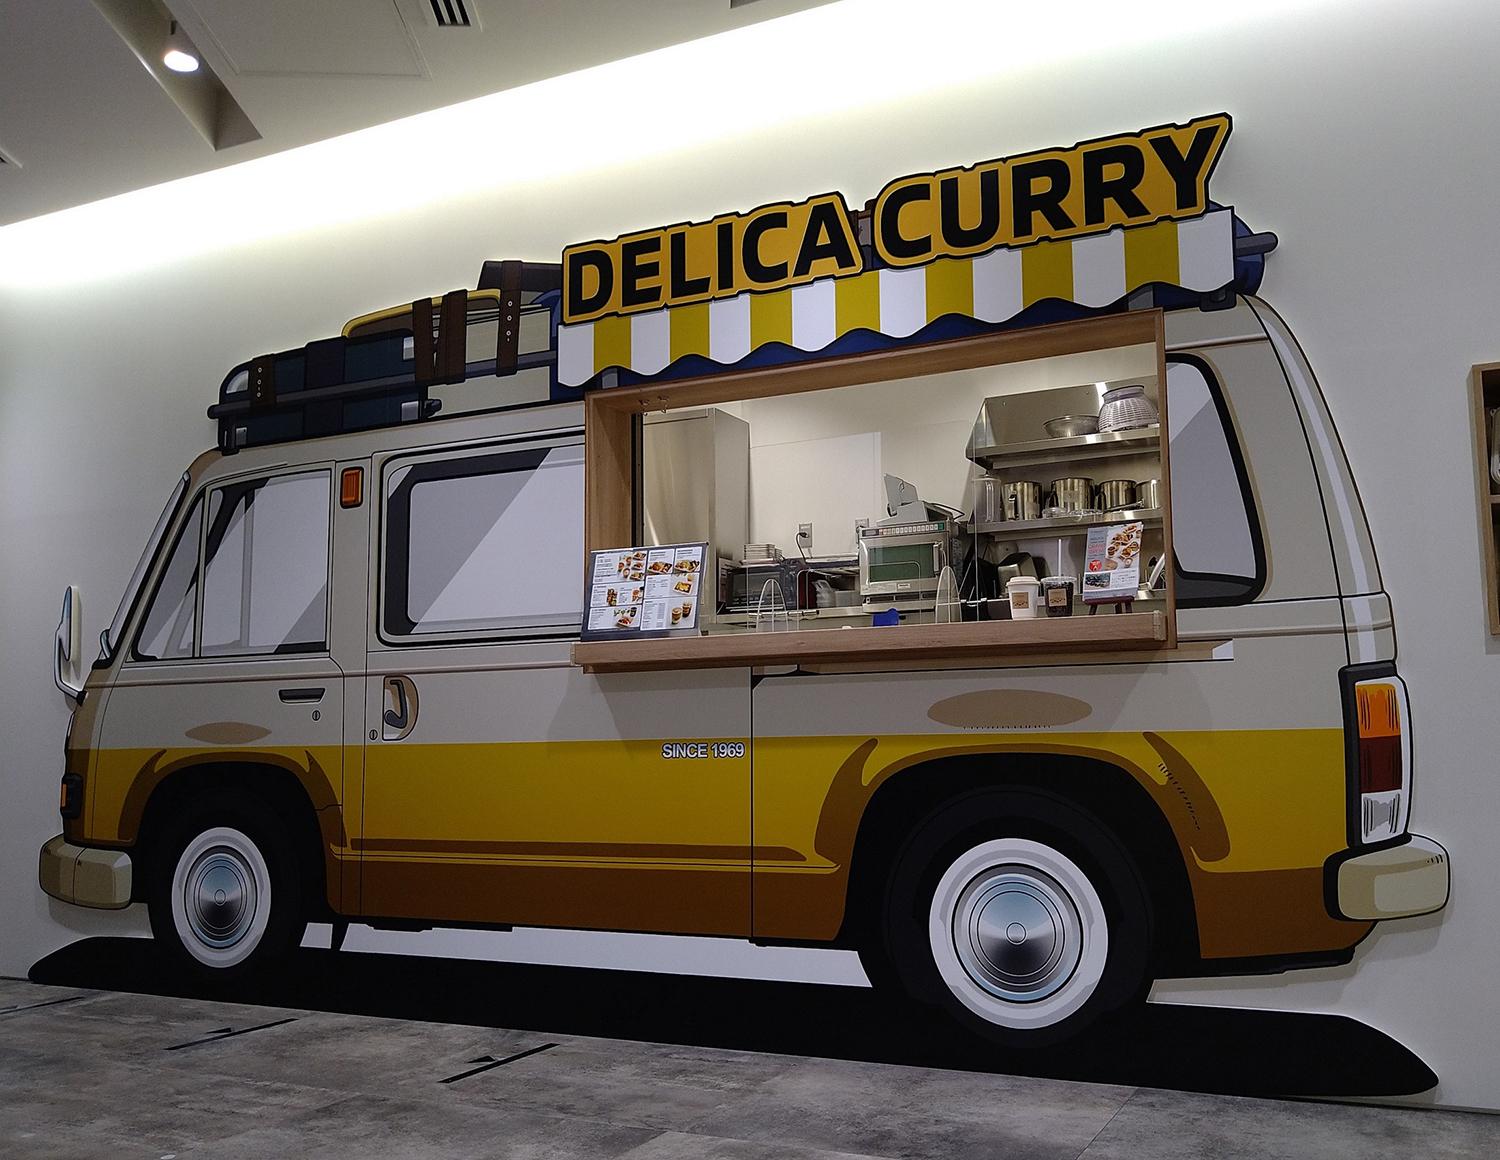 初代「デリカコーチ」のキッチンカーをイメージした外観のカレーショップ「DELICA CURRY」